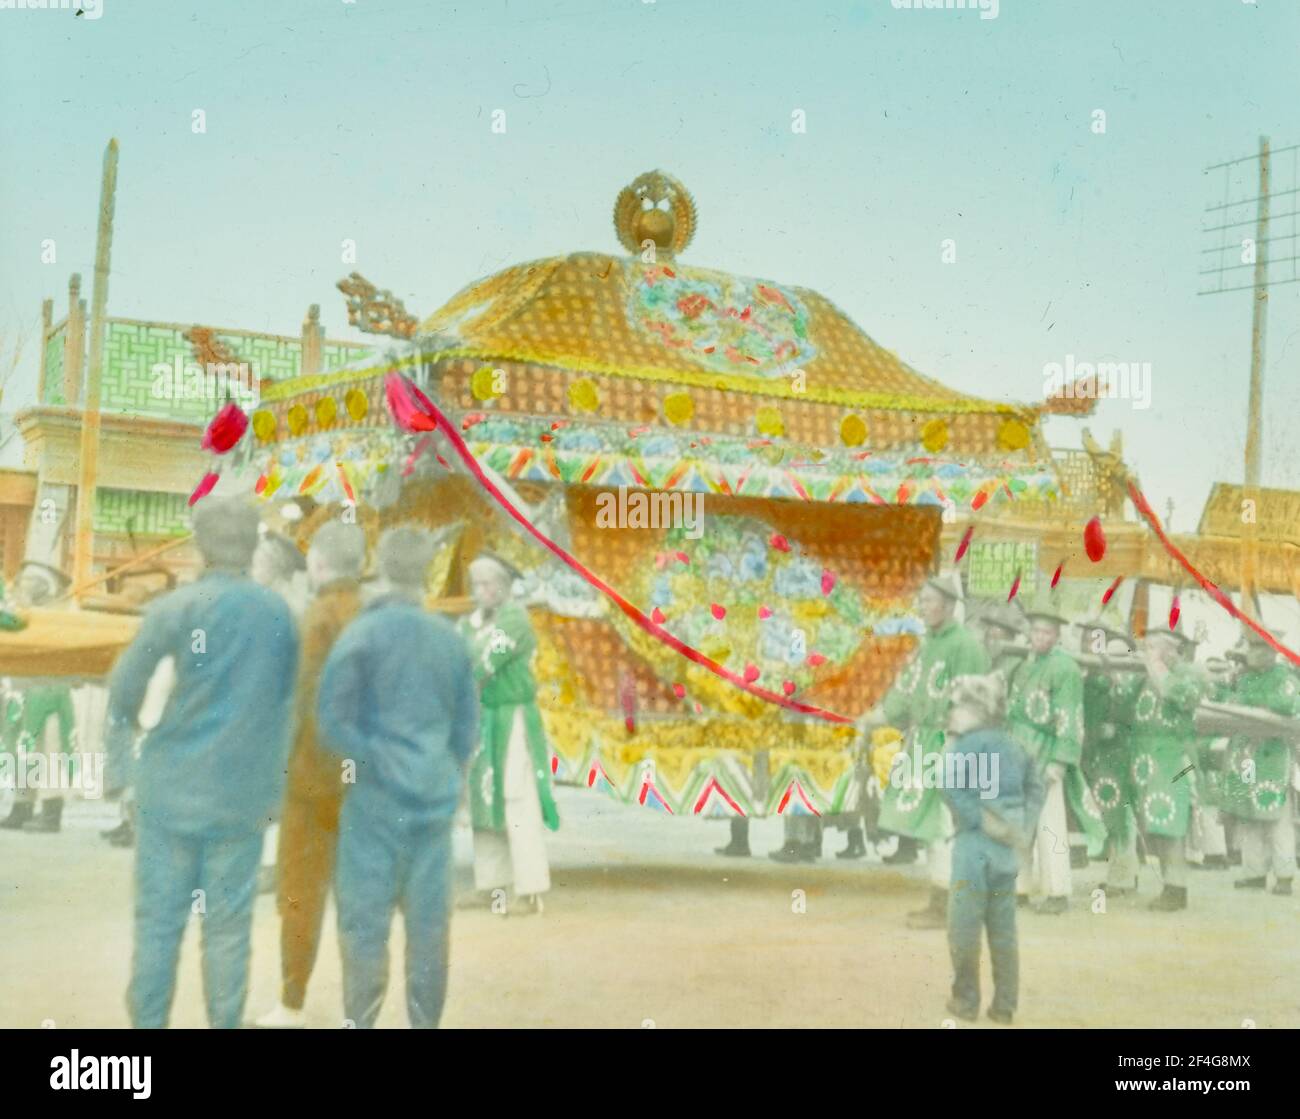 Handkolorierte, unbetitelte Laternenrutsche mit Tempelbau mit anwesenden Menschen, China, Peking (China), 1918. Aus der Sammlung Sidney D. Gamble Photographs. () Stockfoto